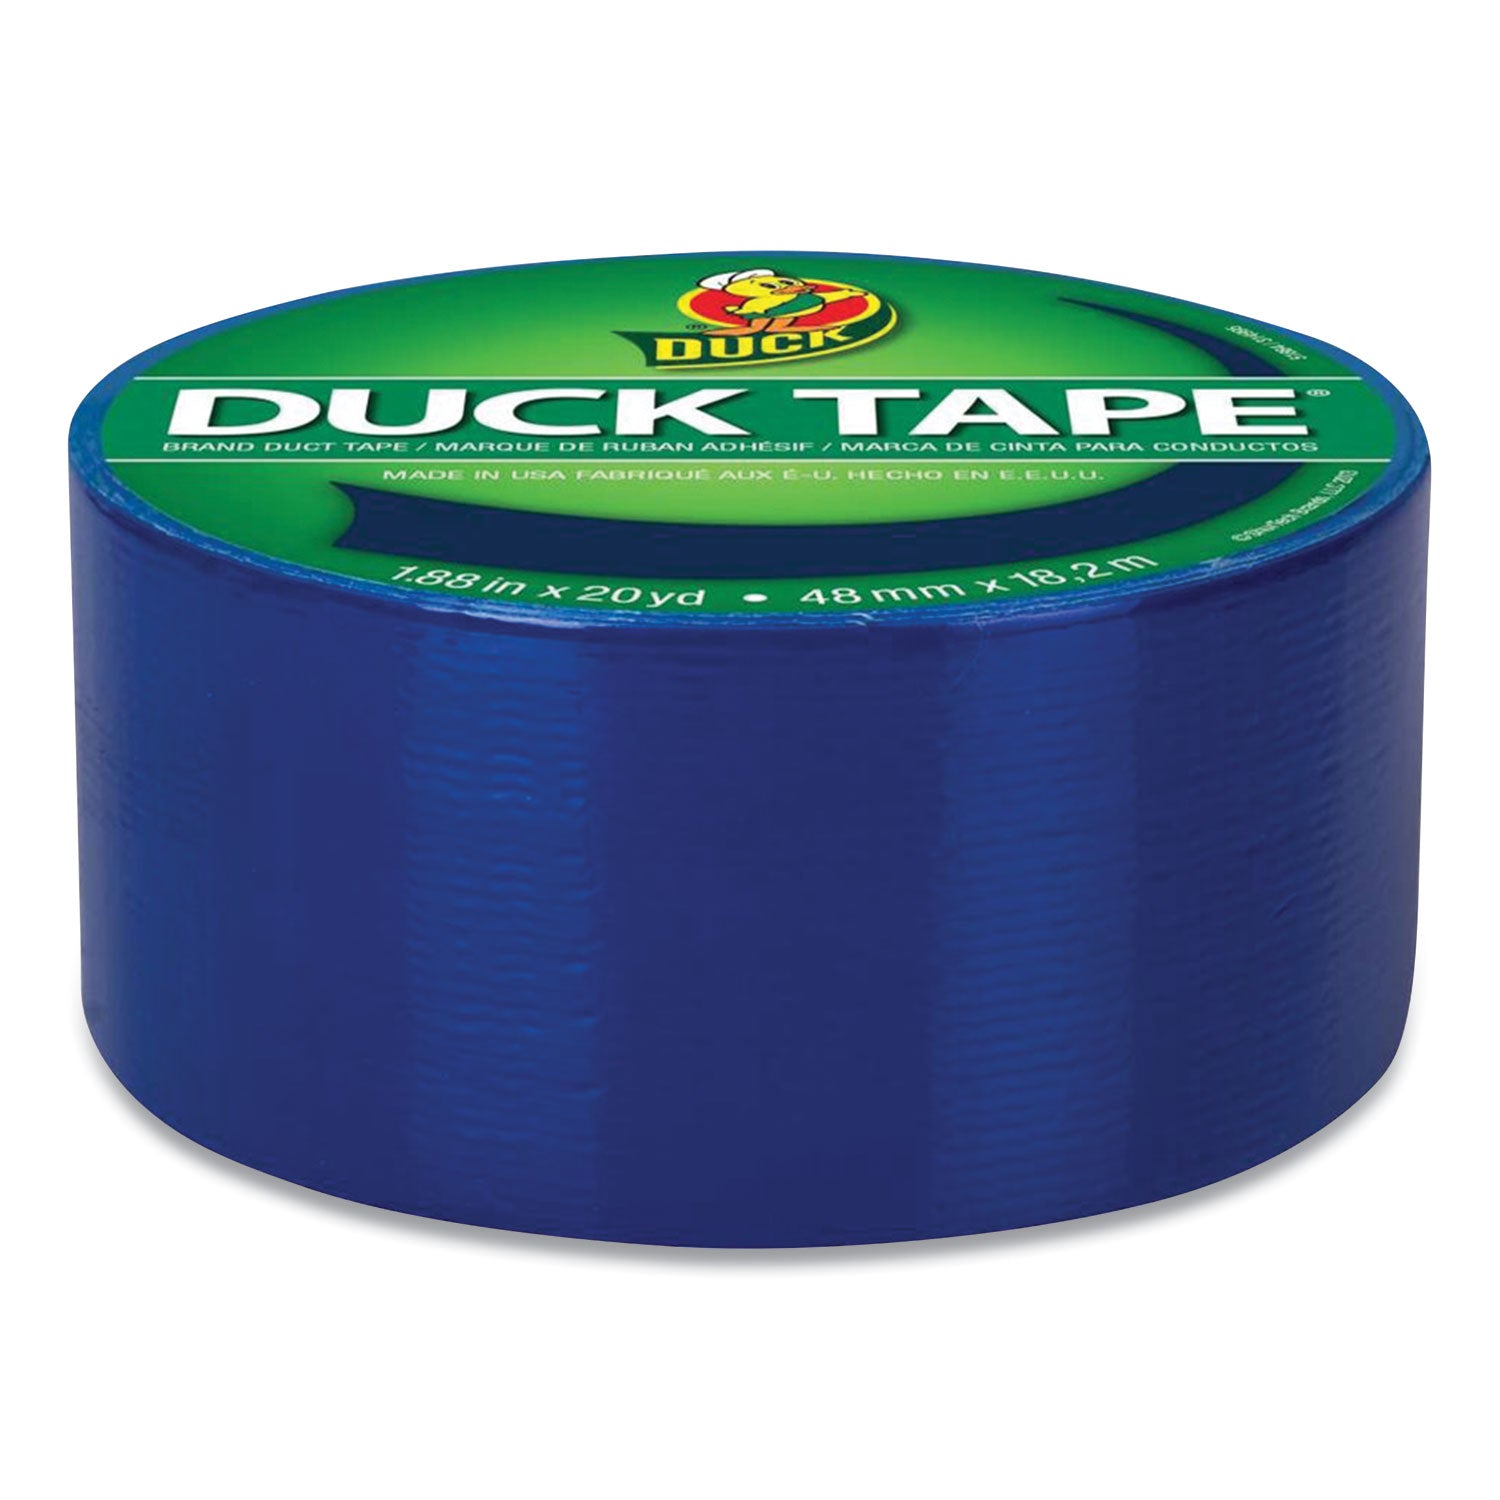 heavy-duty-duct-tape-188-x-20-yds-blue_duc1304959 - 5